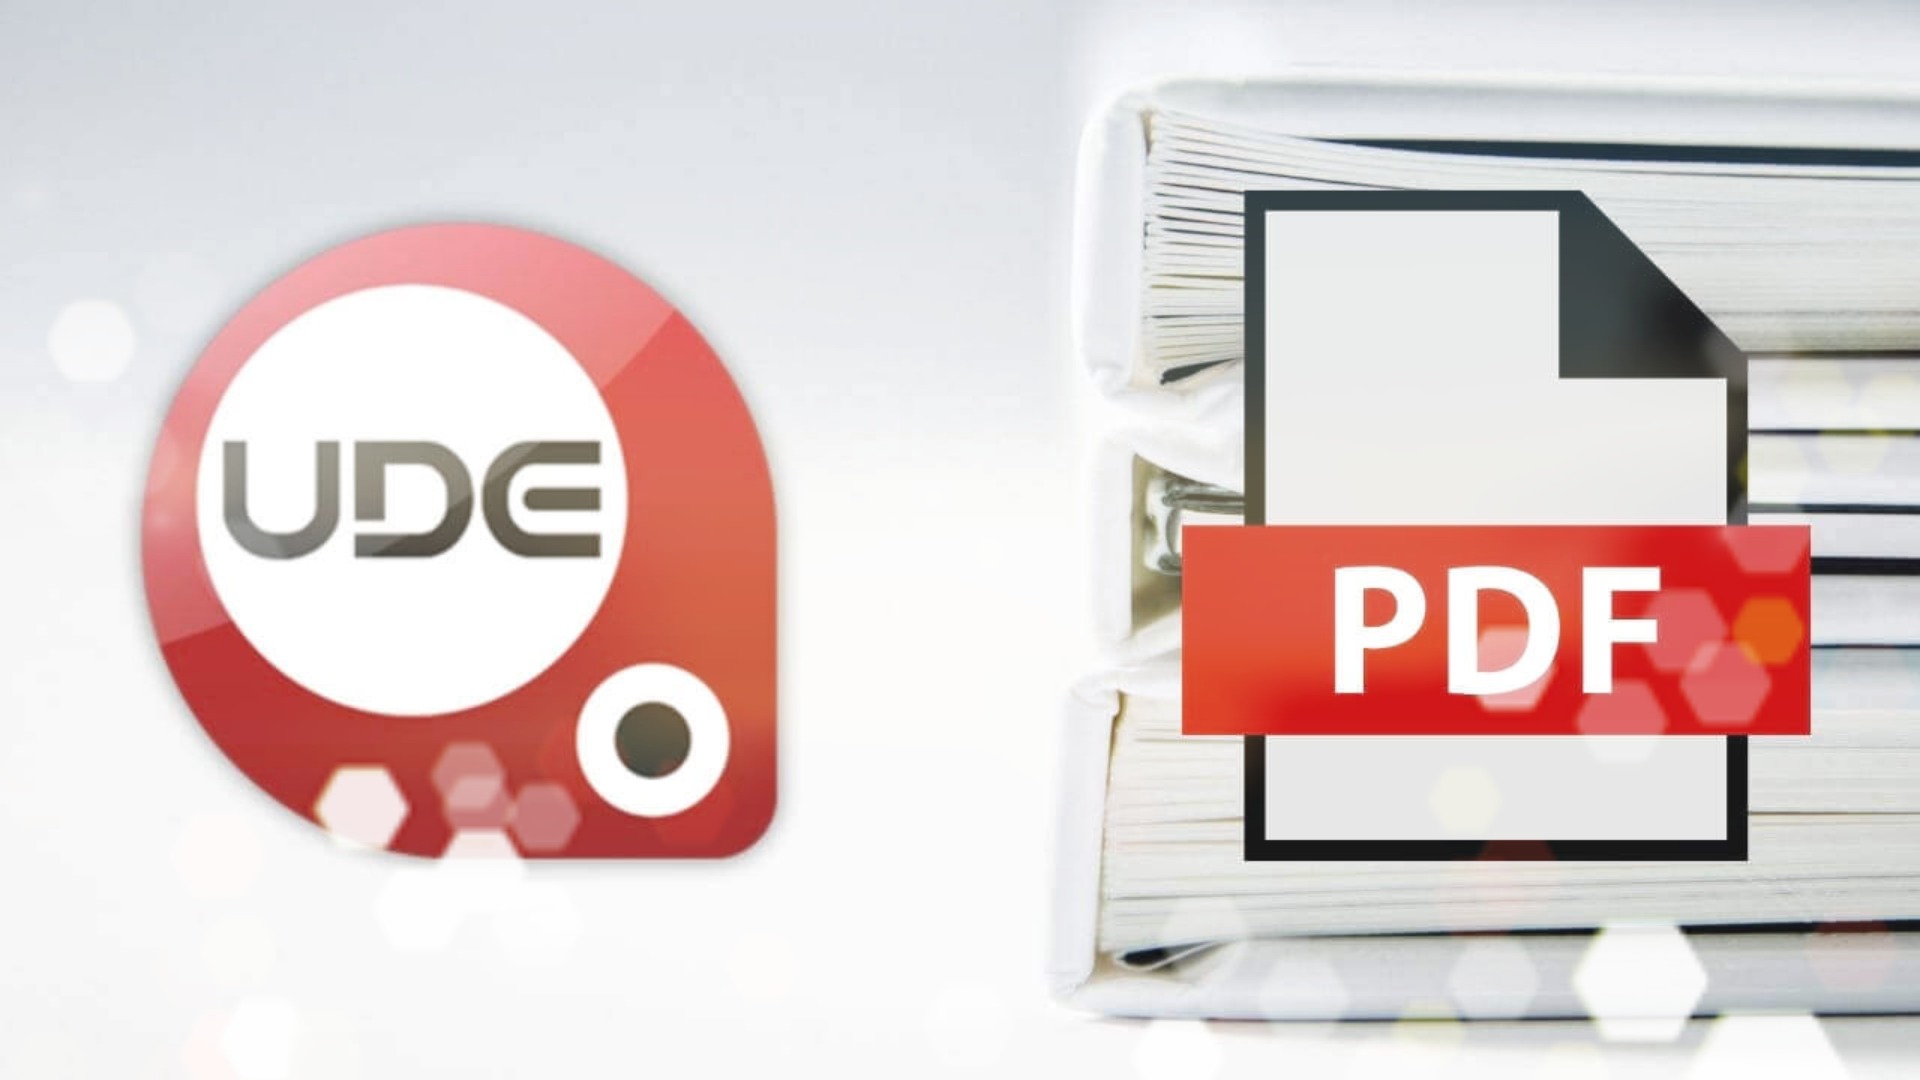 UDF to PDF Çevirme - UDF Dosyası PDF'ye Dönüştürme Nasıl Yapılır?